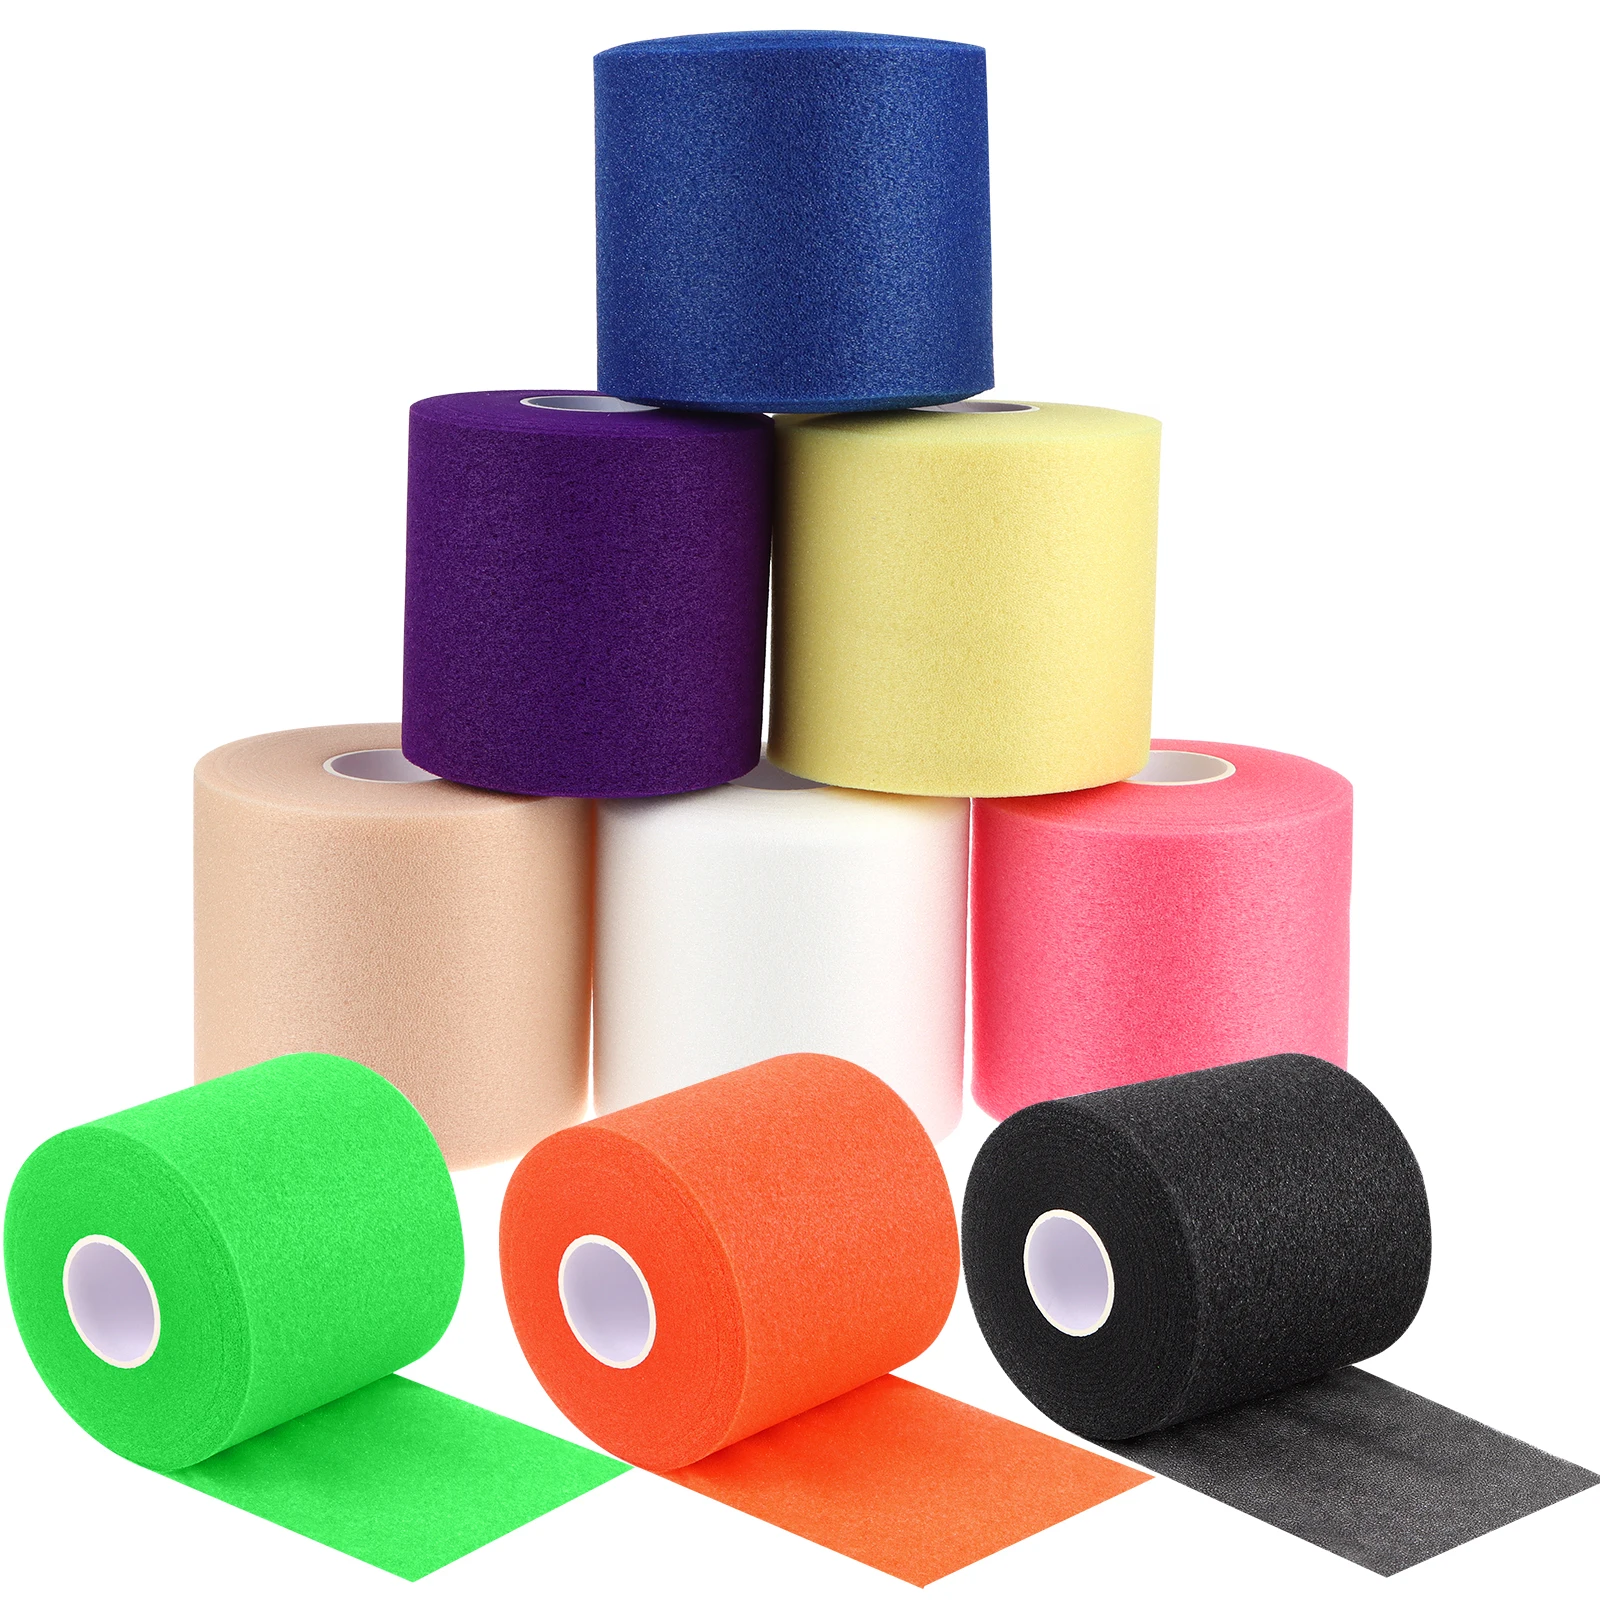 8 рулонов спортивной пенопластовой ленты Colorful Athletic Pre Wrap 2,5-дюймовая спортивная пенопластовая лента rd для лодыжек, запястий и кистей рук - 0